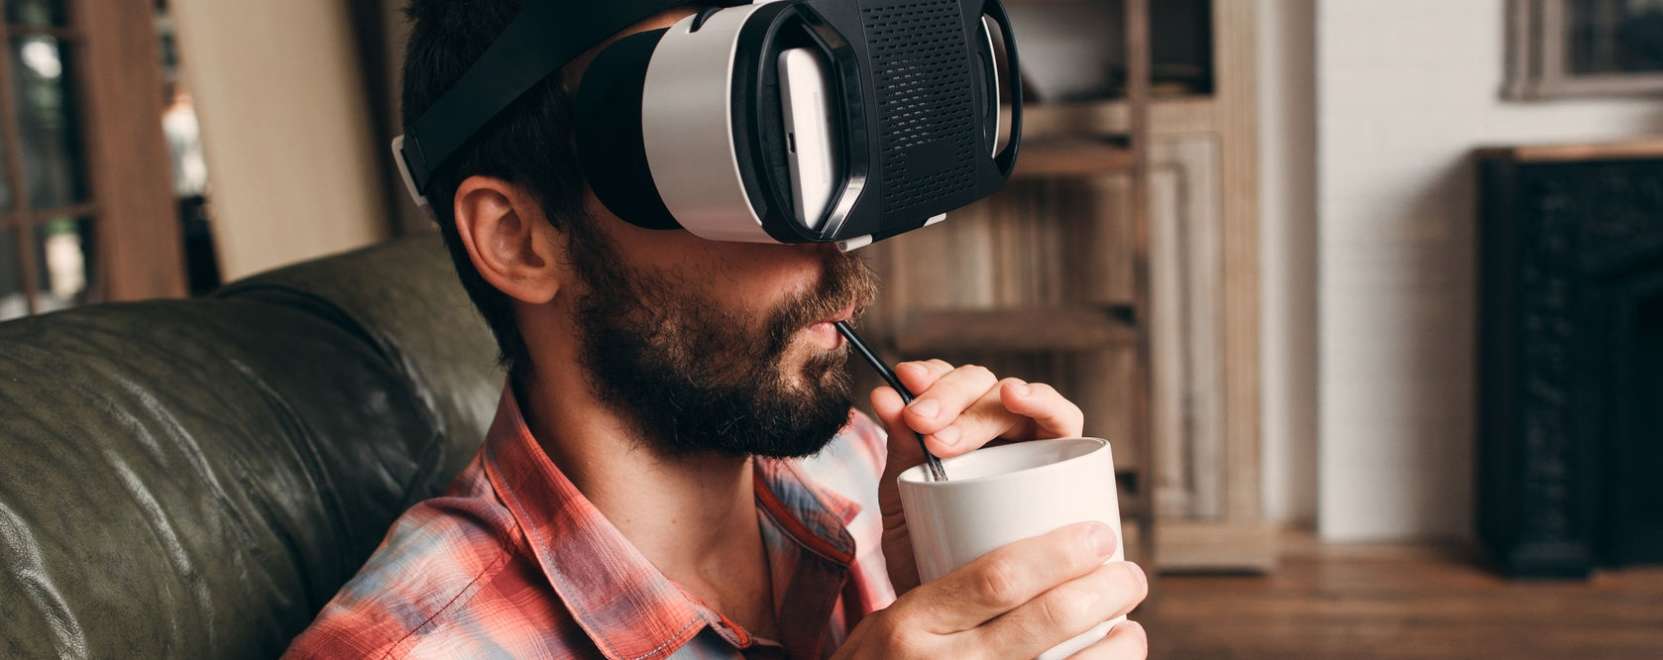 Virtuális valóság – már a moziban is